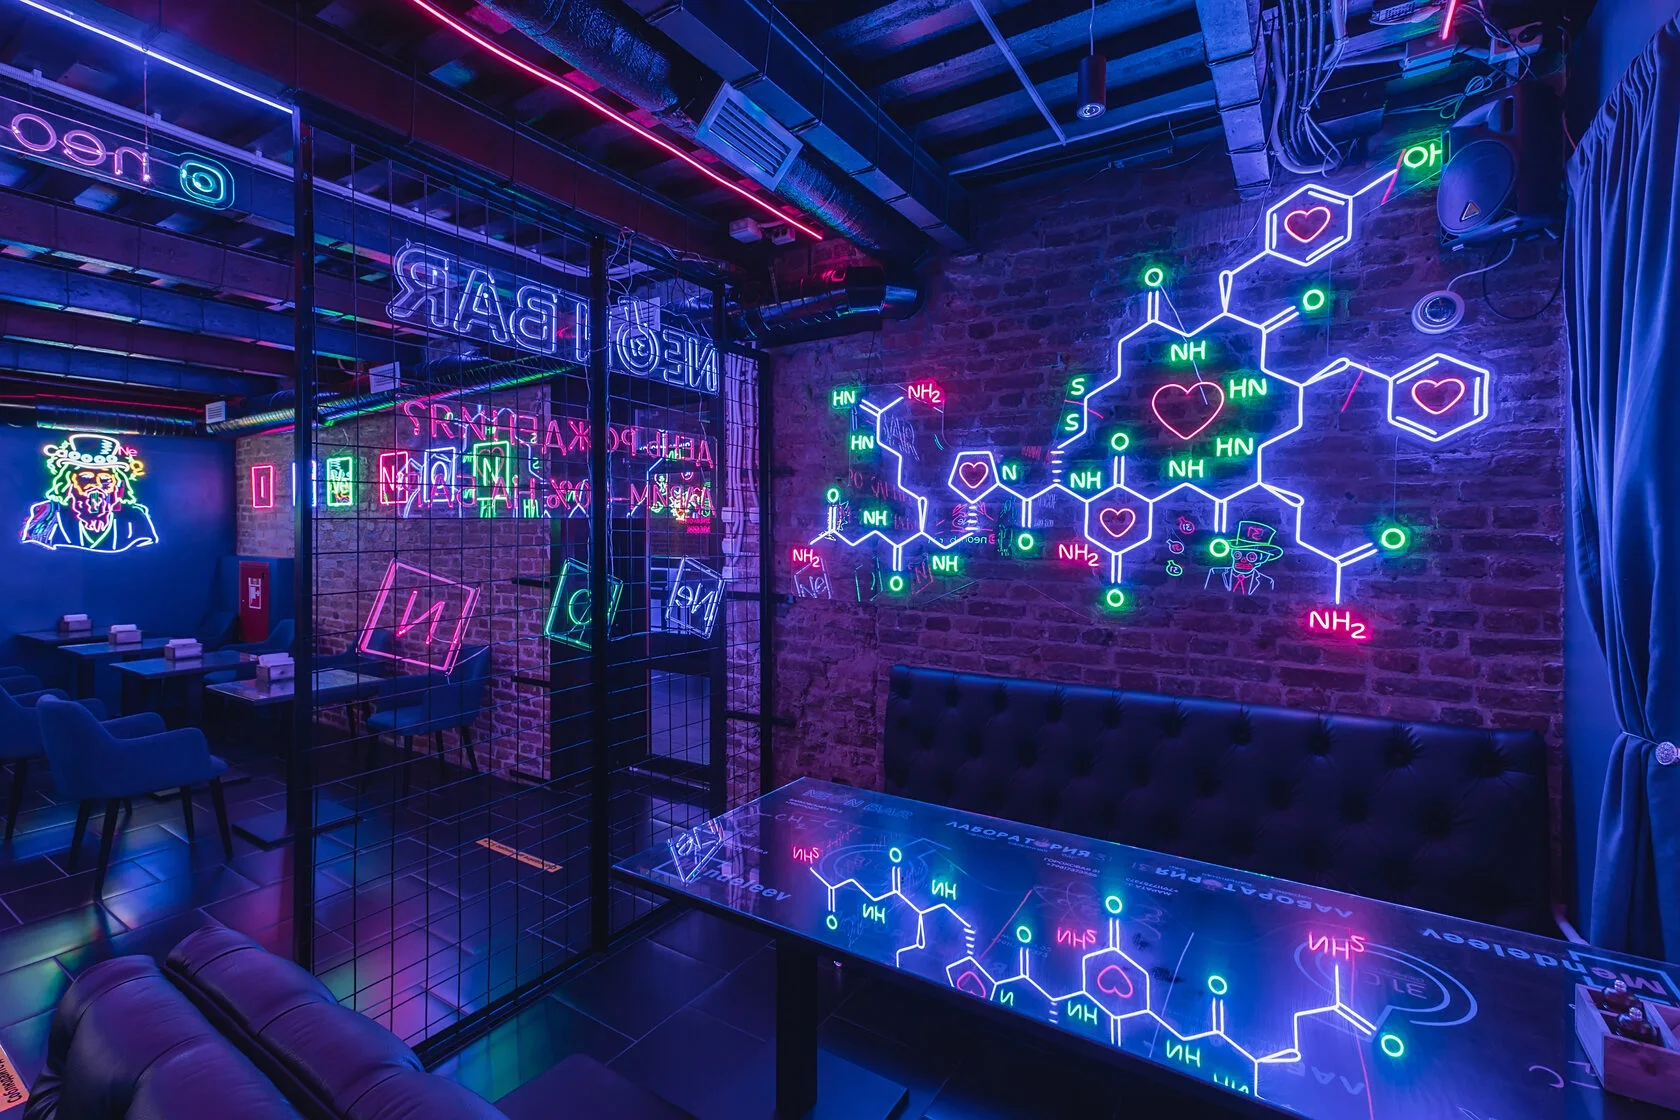 Четырёхэтажный коктейльный бар от сети химических баров - 31 Chemical network!